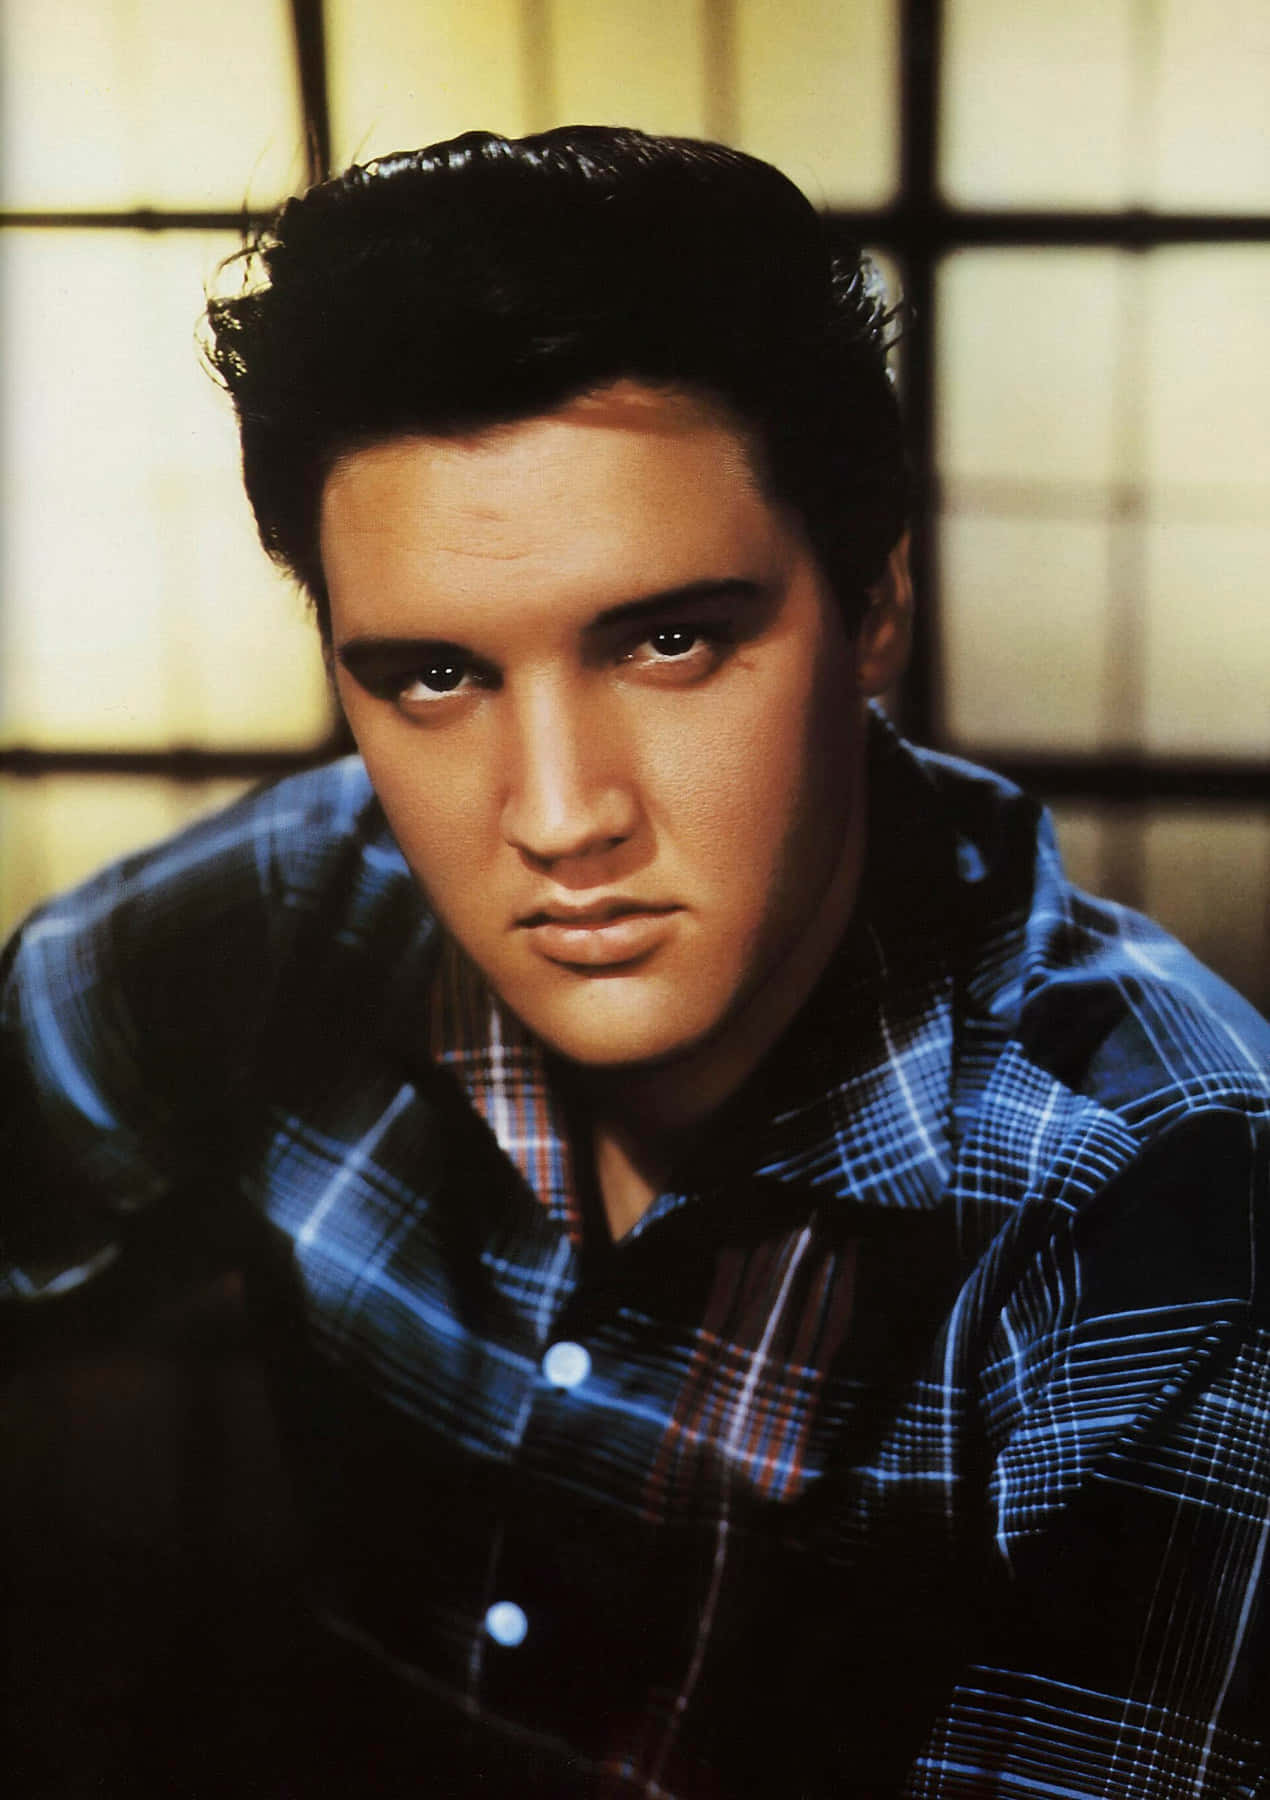 Bildzur Ehrung Von Elvis Presley - Der König Des Rock